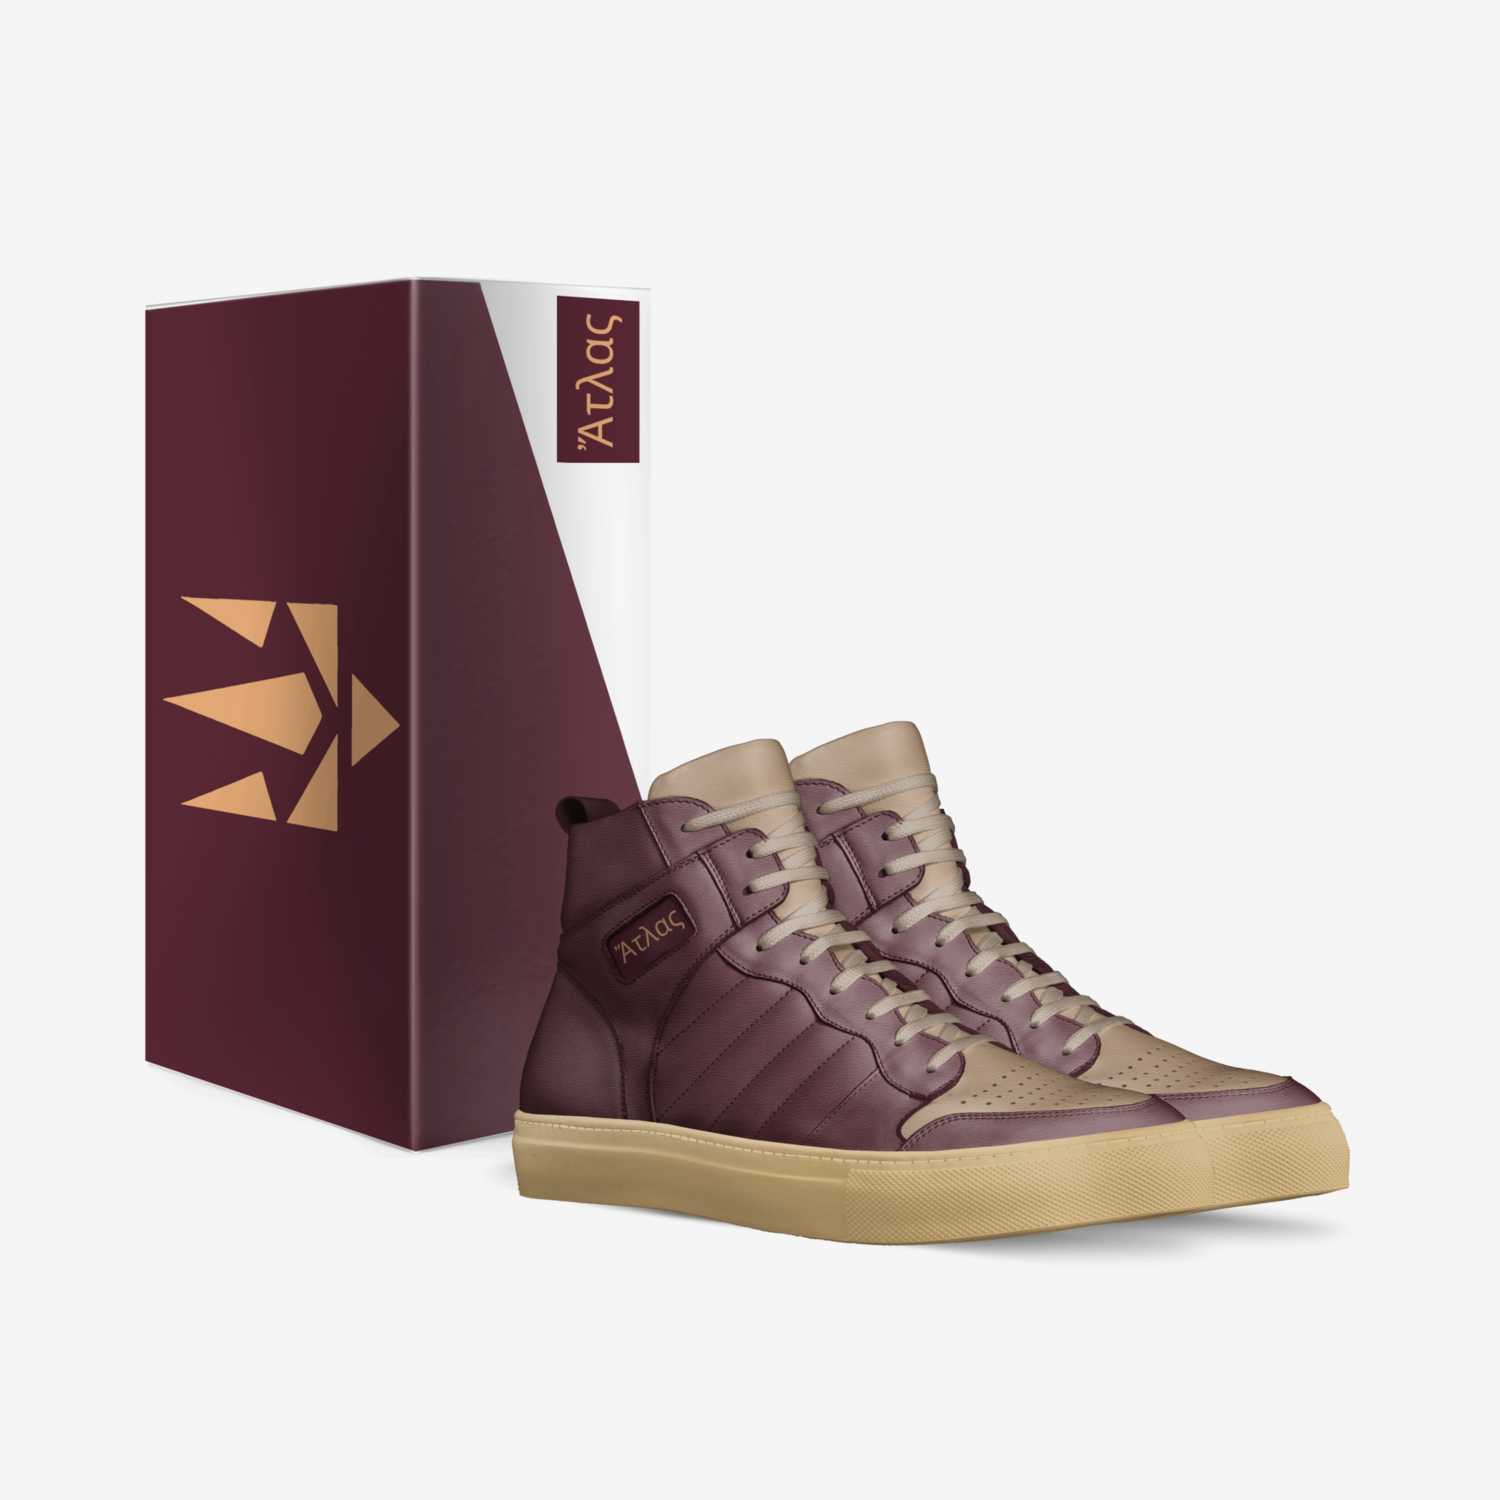 A T L A S custom made in Italy shoes by Ryan G. Rgp Enterprises | Box view